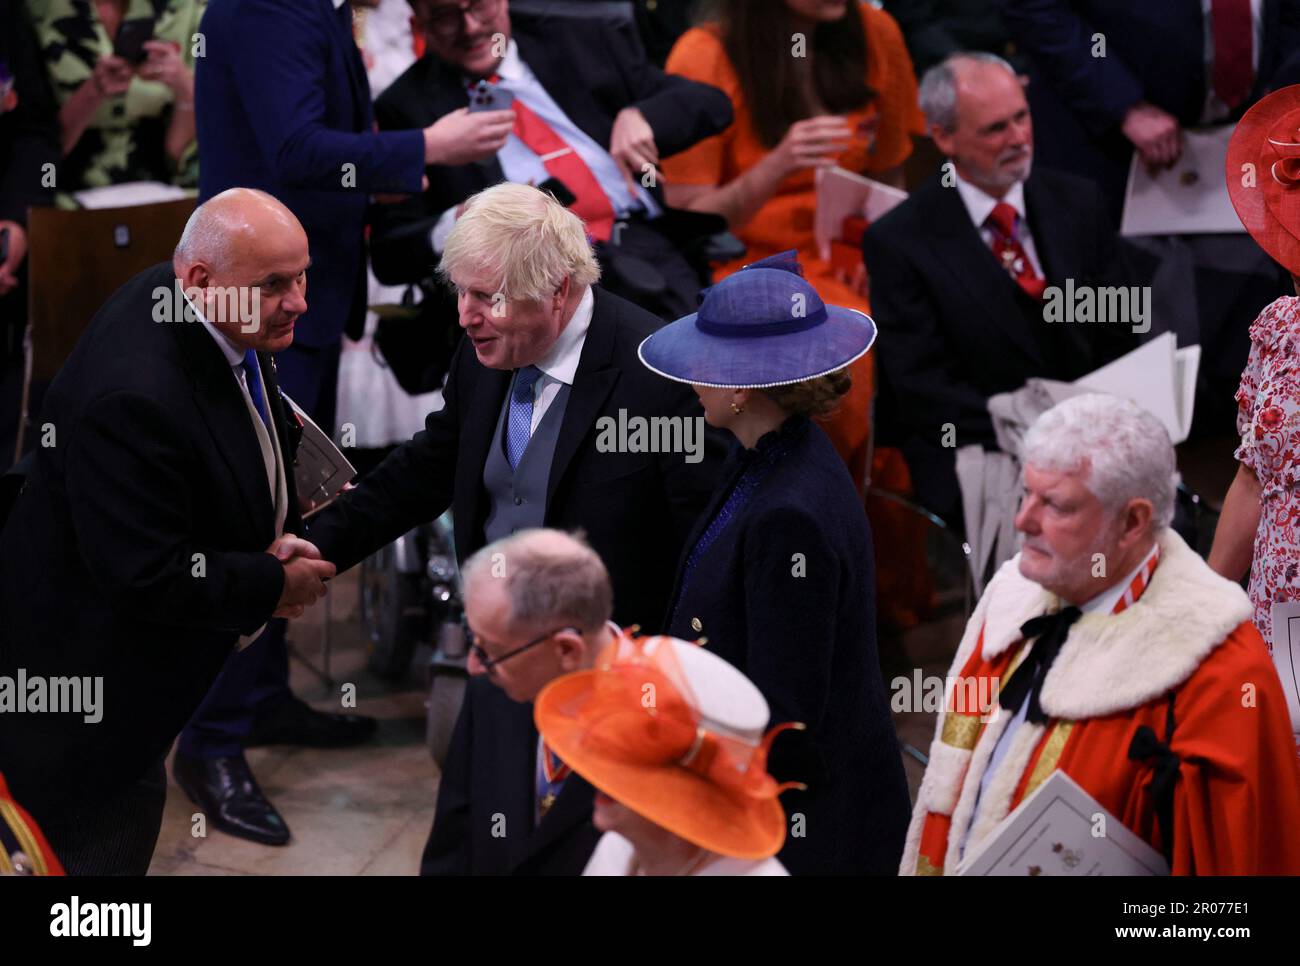 Ehemaliger Premierminister Boris Johnson verlässt das Hotel nach der Krönung von König Karl III. Und Königin Camilla in Westminster Abbey, London. Foto: Samstag, 6. Mai 2023. Stockfoto